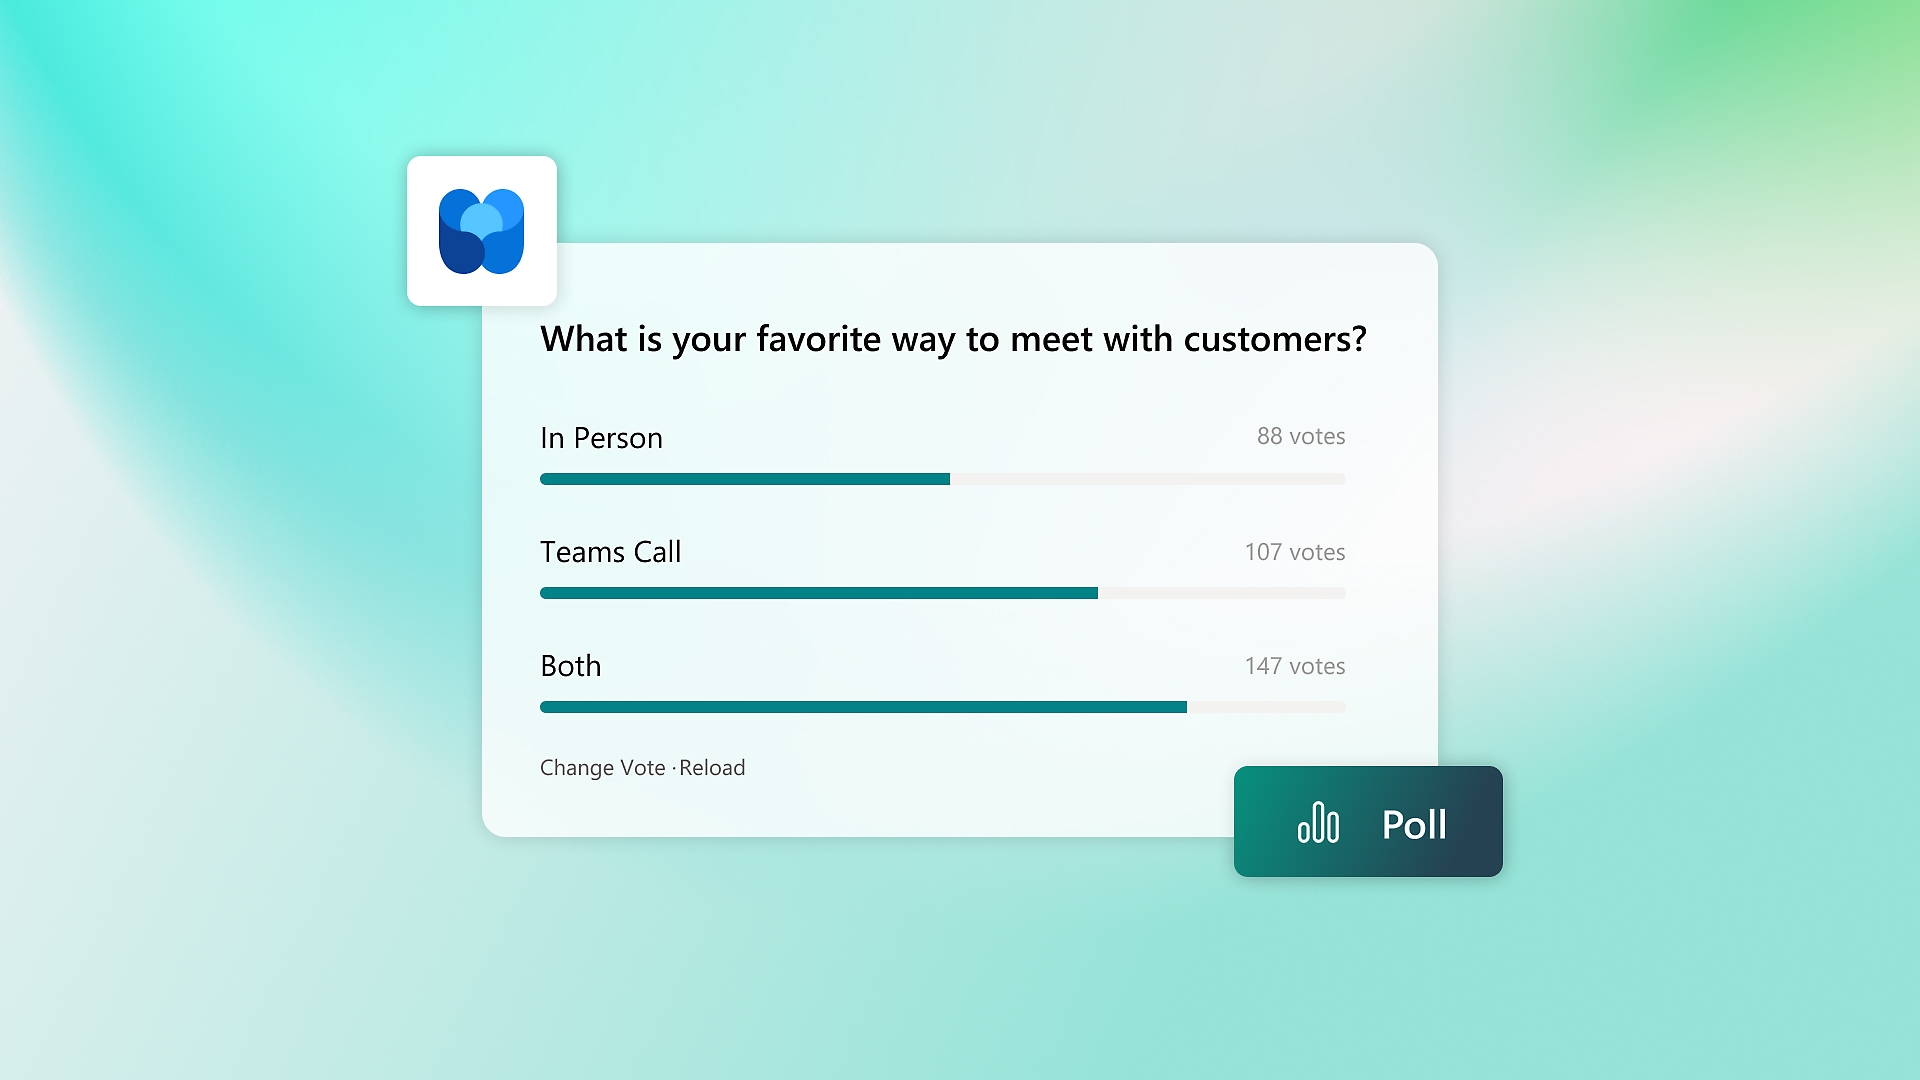 Eine Umfrage mit der Frage, wie die Kontaktaufnahme mit dem Kunden am besten erfolgen soll